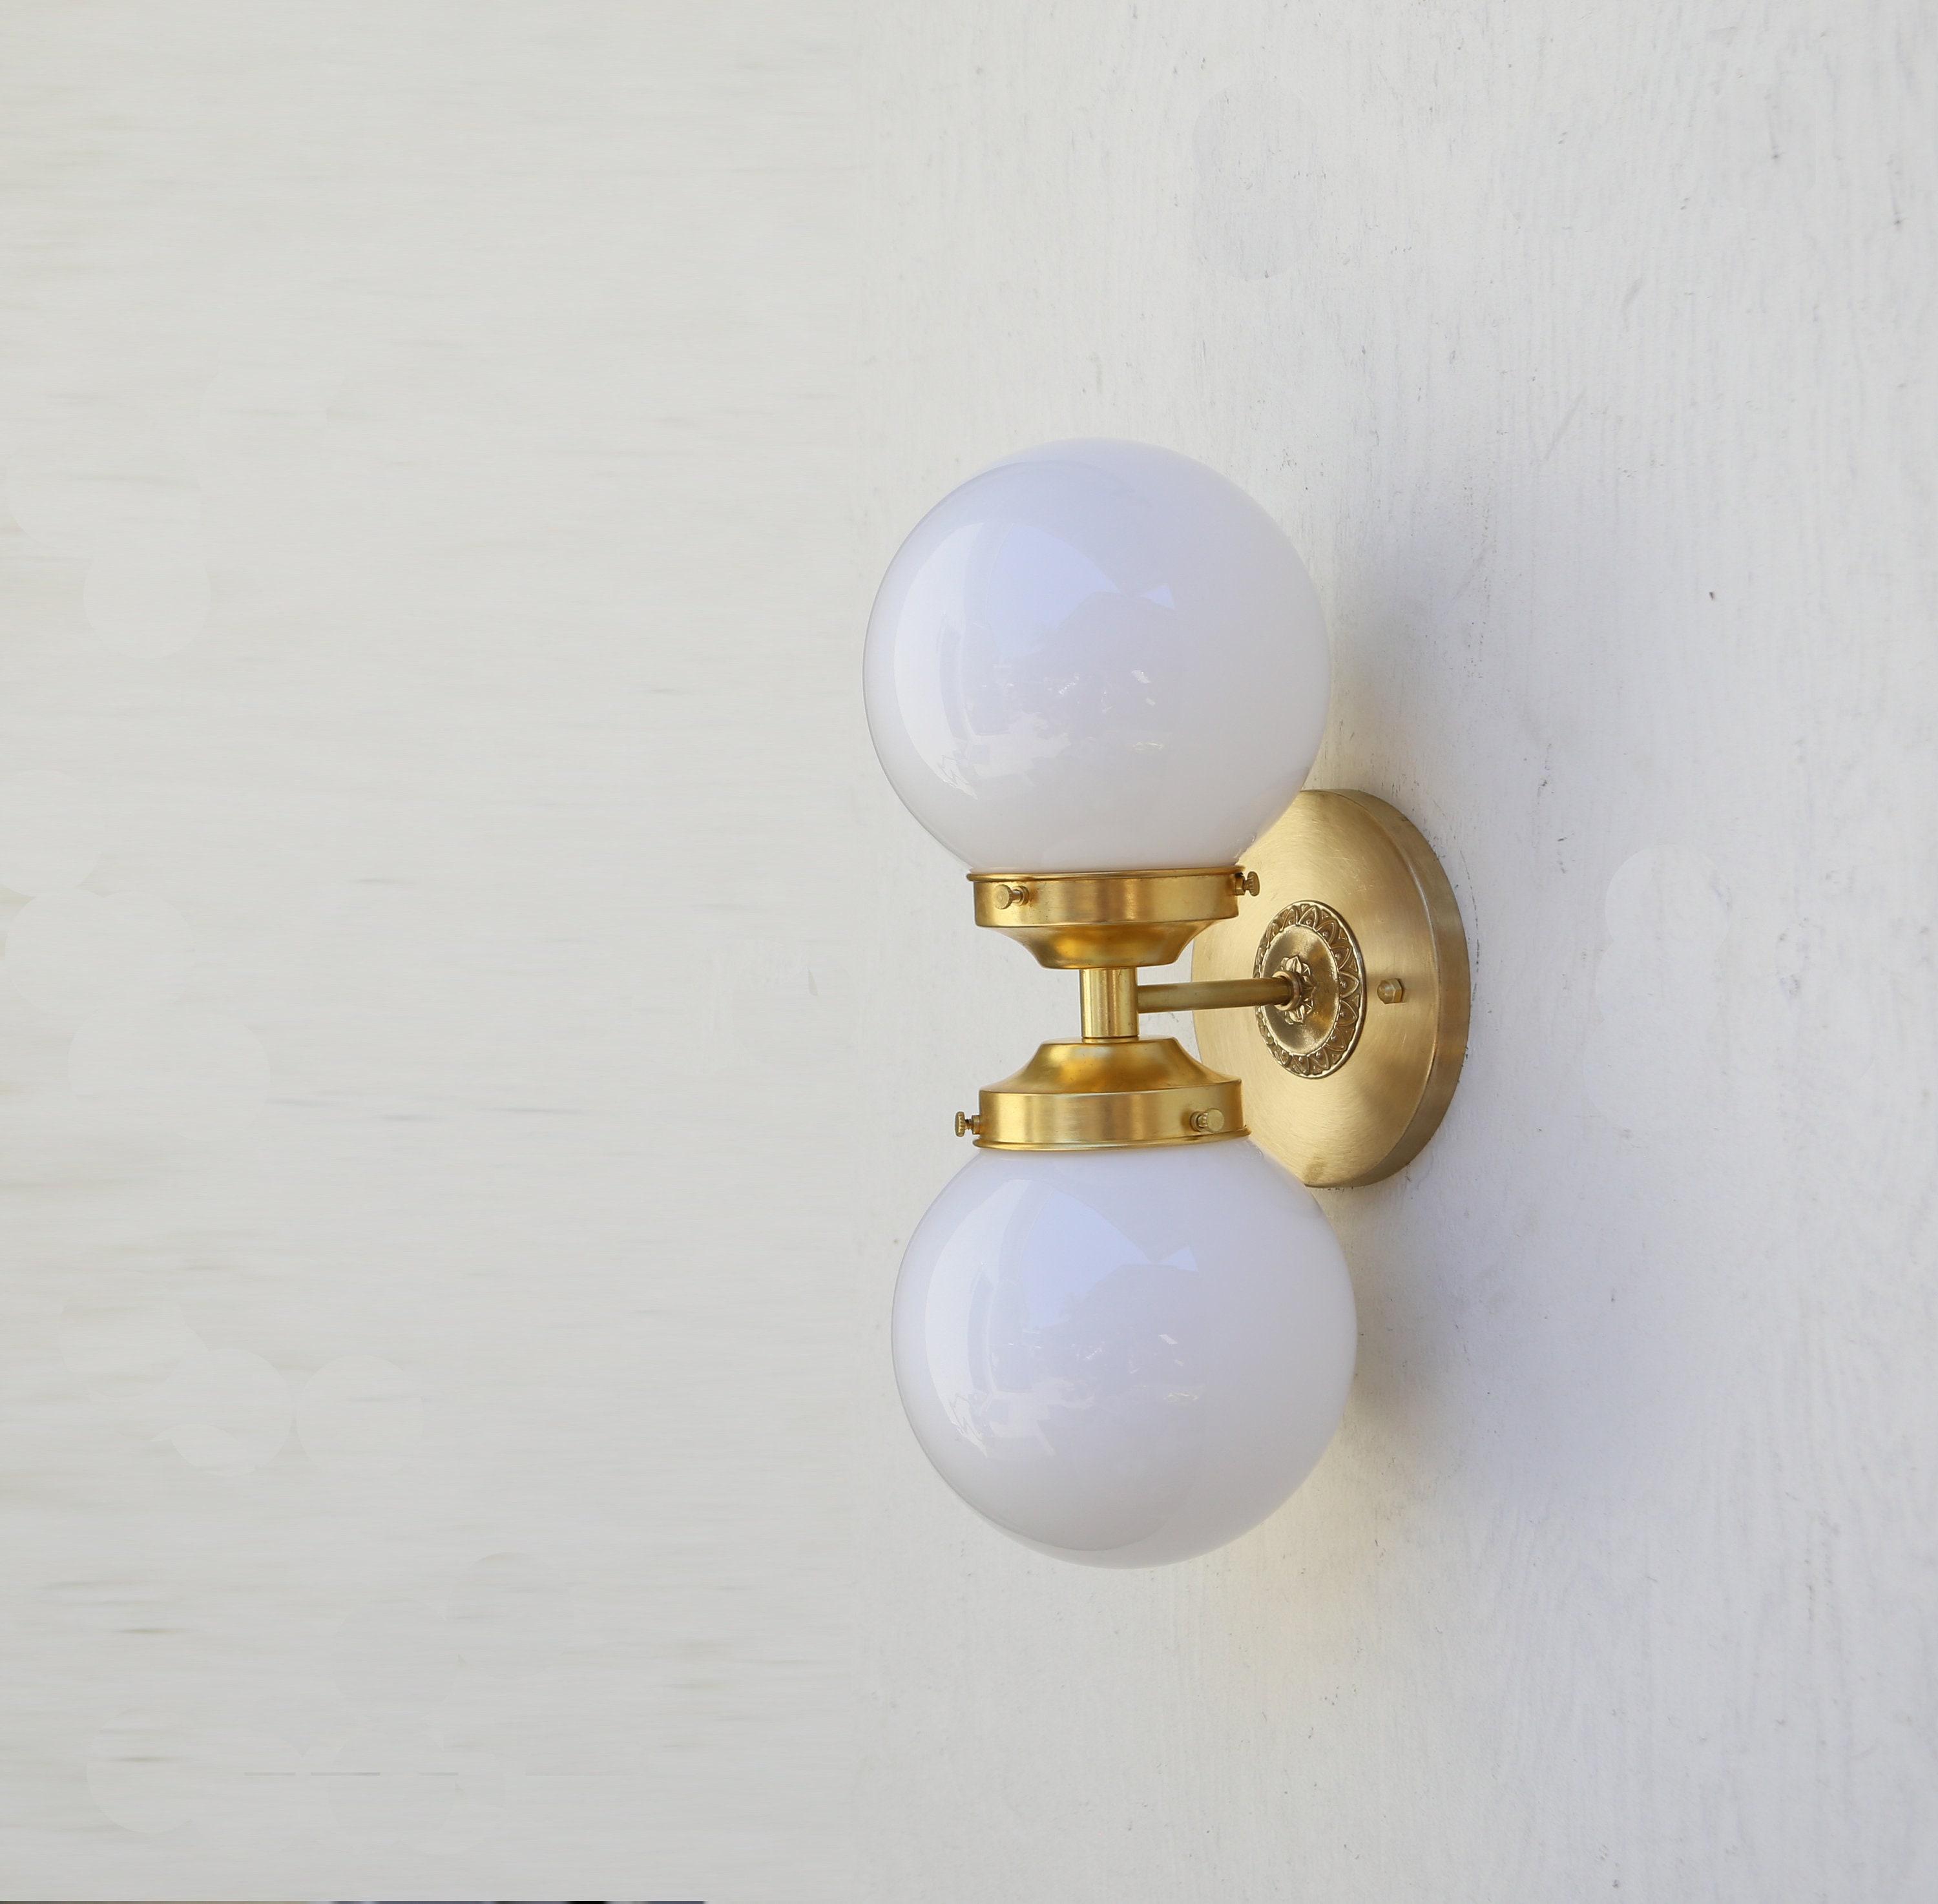 Tocador del baño tocador accesorio luz de la pared de latón | Etsy